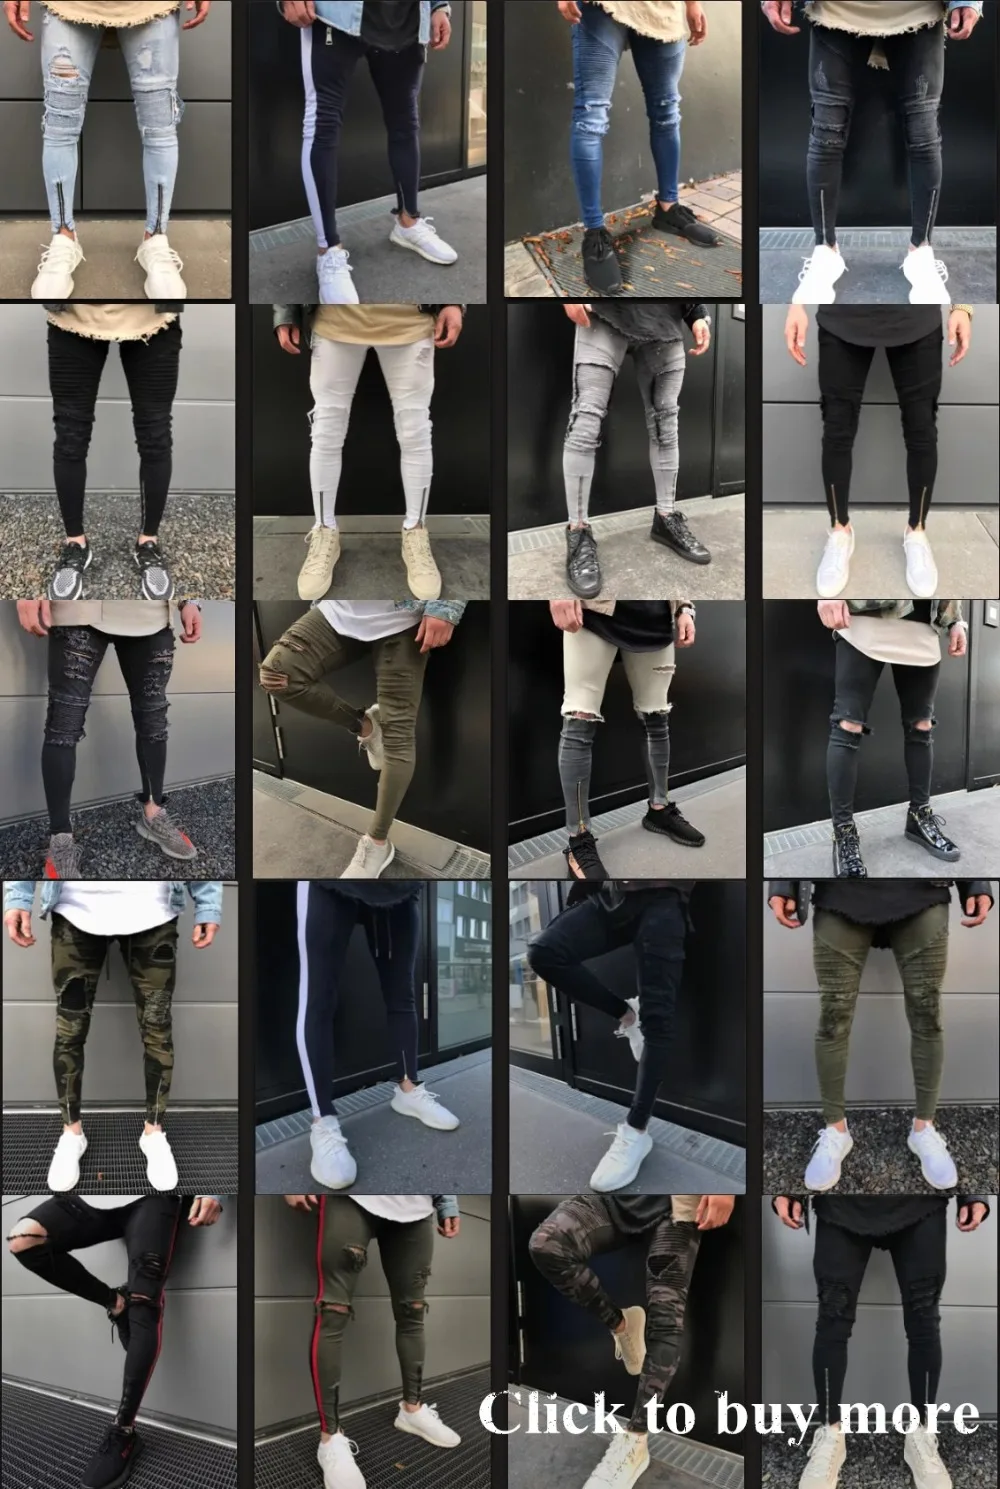 Neverfunction High Street мужские рваные джинсовые штаны с дырками в стиле хип-хоп, стрейч, на молнии, мотоциклетные рваные обтягивающие байкерские джинсы